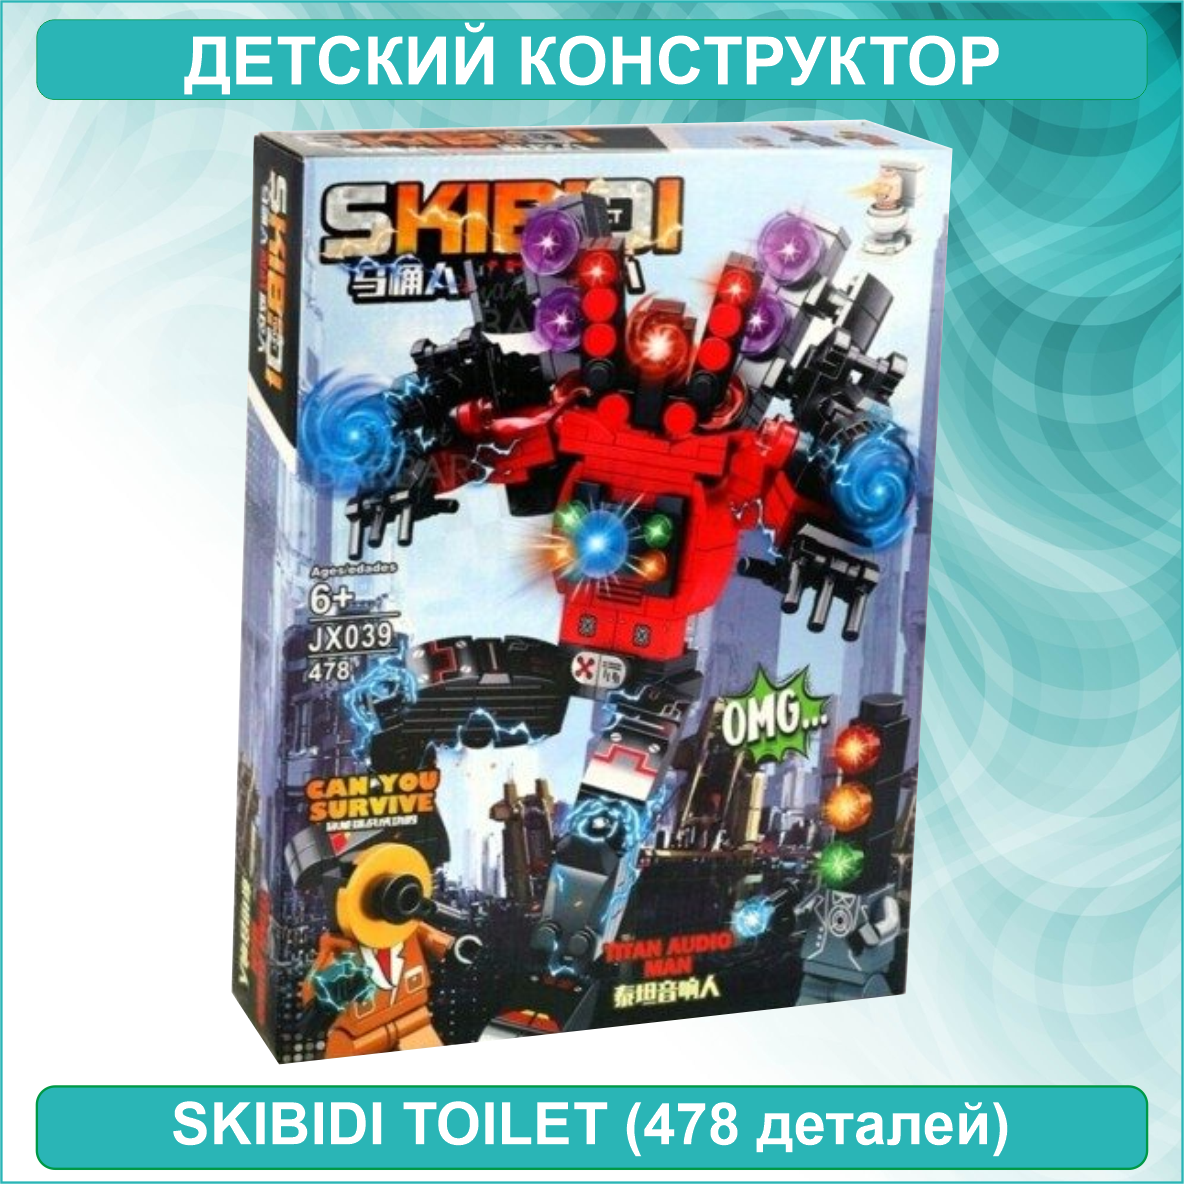 Детский конструктор "Спикер Титан" Скибиди Туалет - Skibidi toilet (478 деталей)